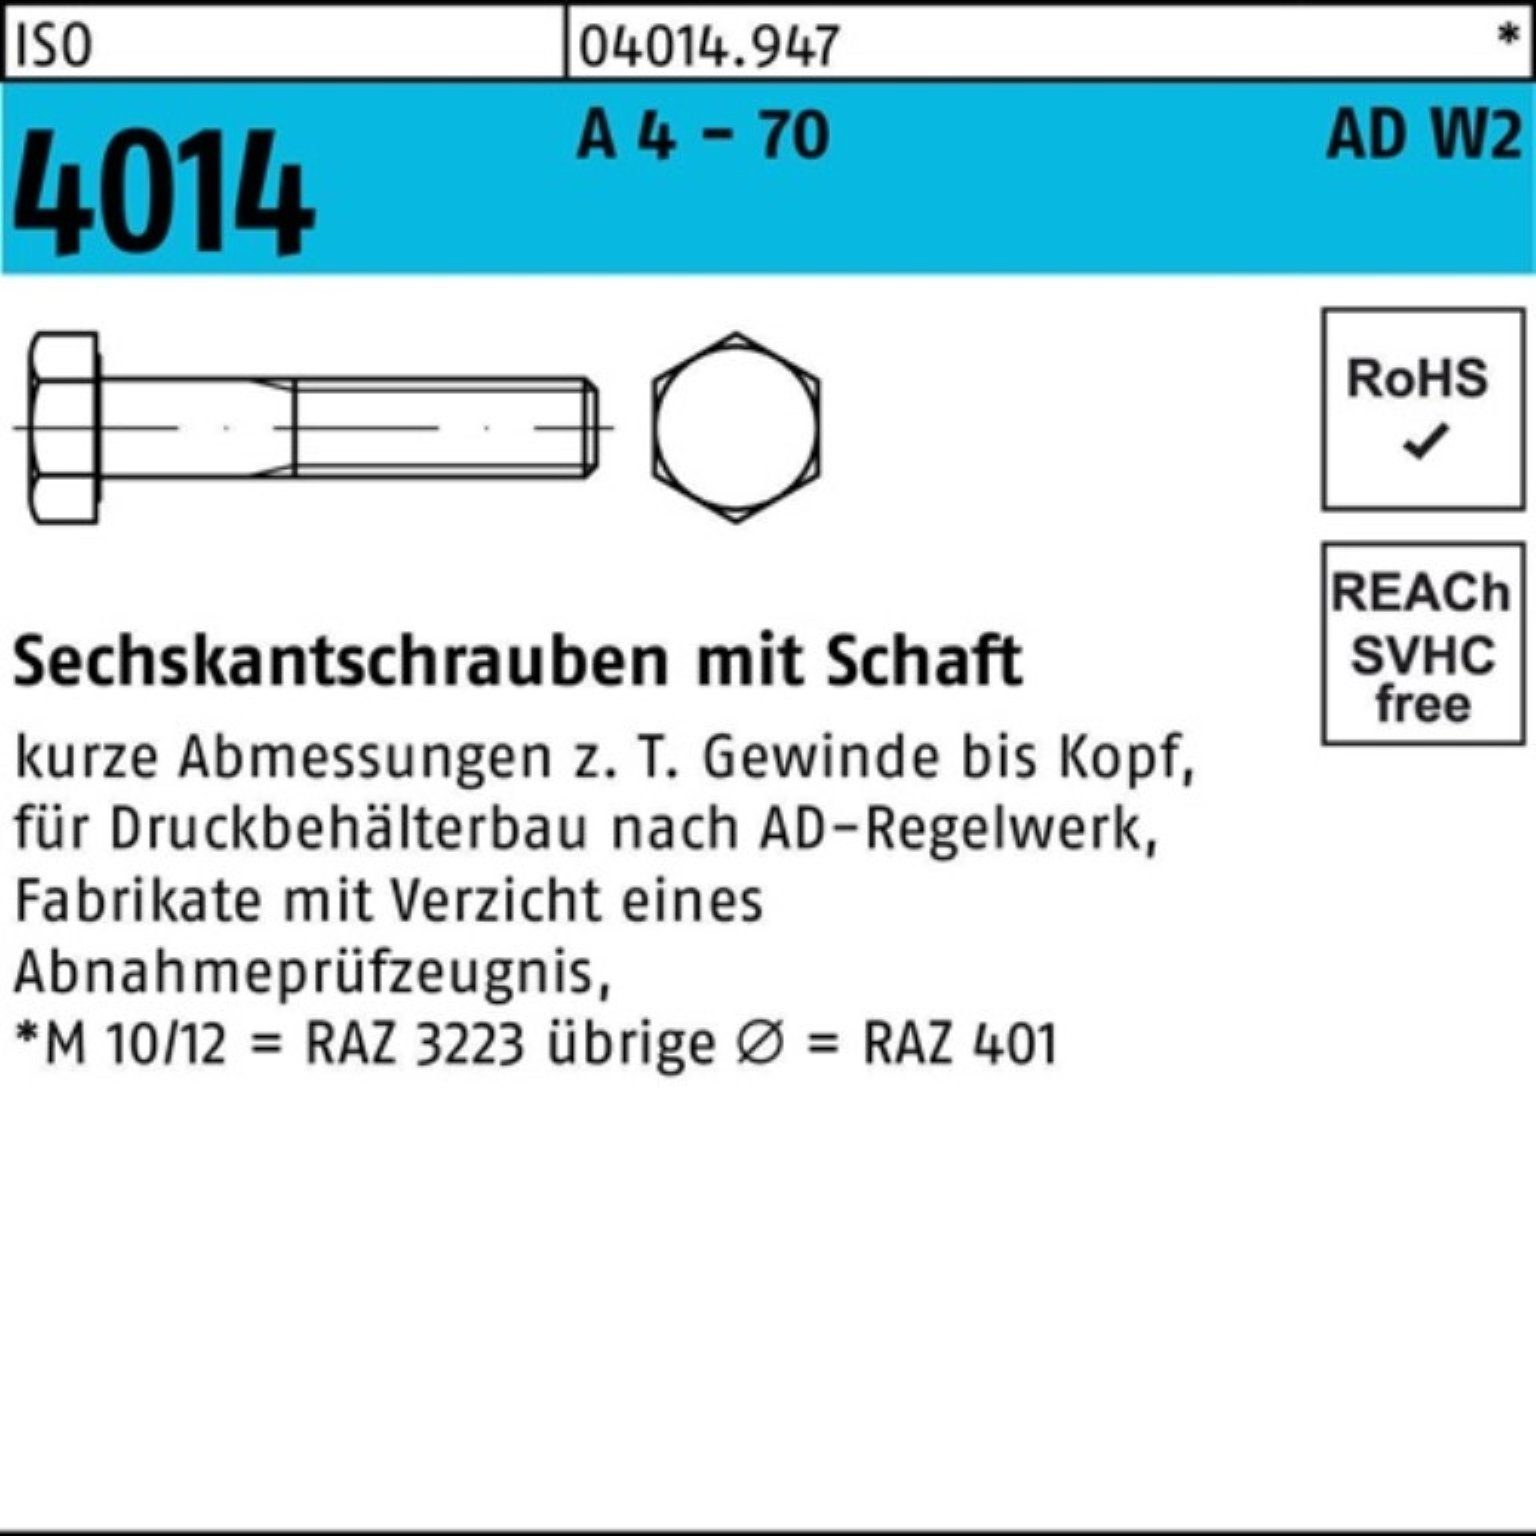 Bufab Sechskantschraube 100er Pack Sechskantschraube ISO 4014 Schaft M16x 65 A 4 - 70 AD-W2 25